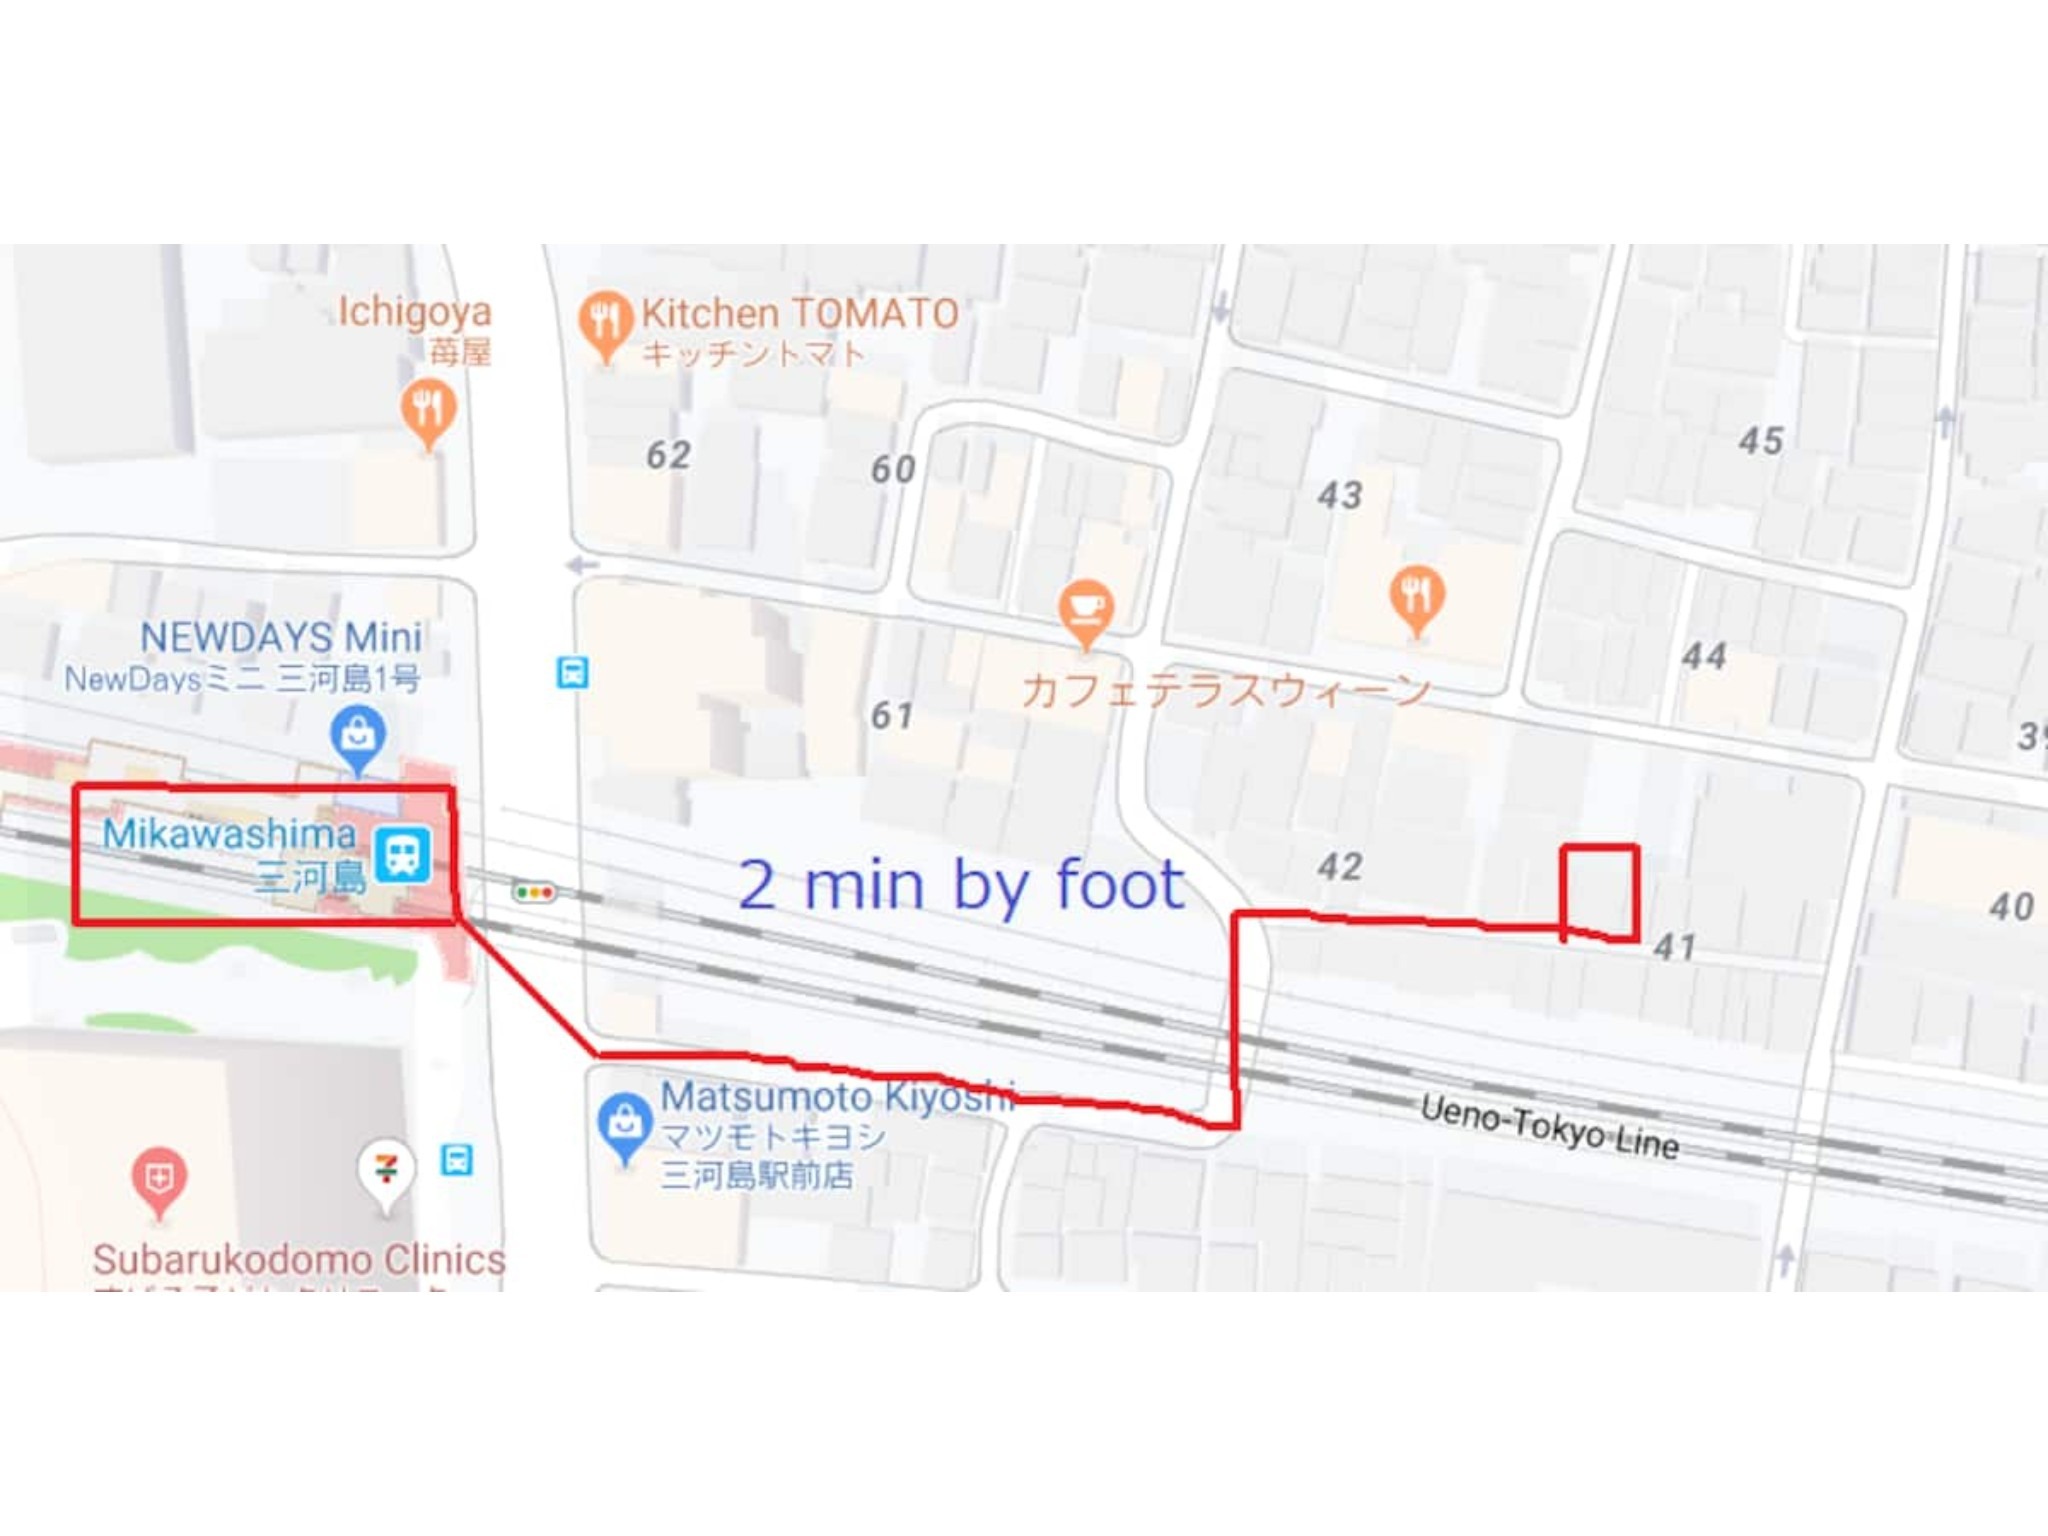 【一棟貸切】駅徒歩2分/上野直通5分/日暮里/浅草までアクセス良好! 